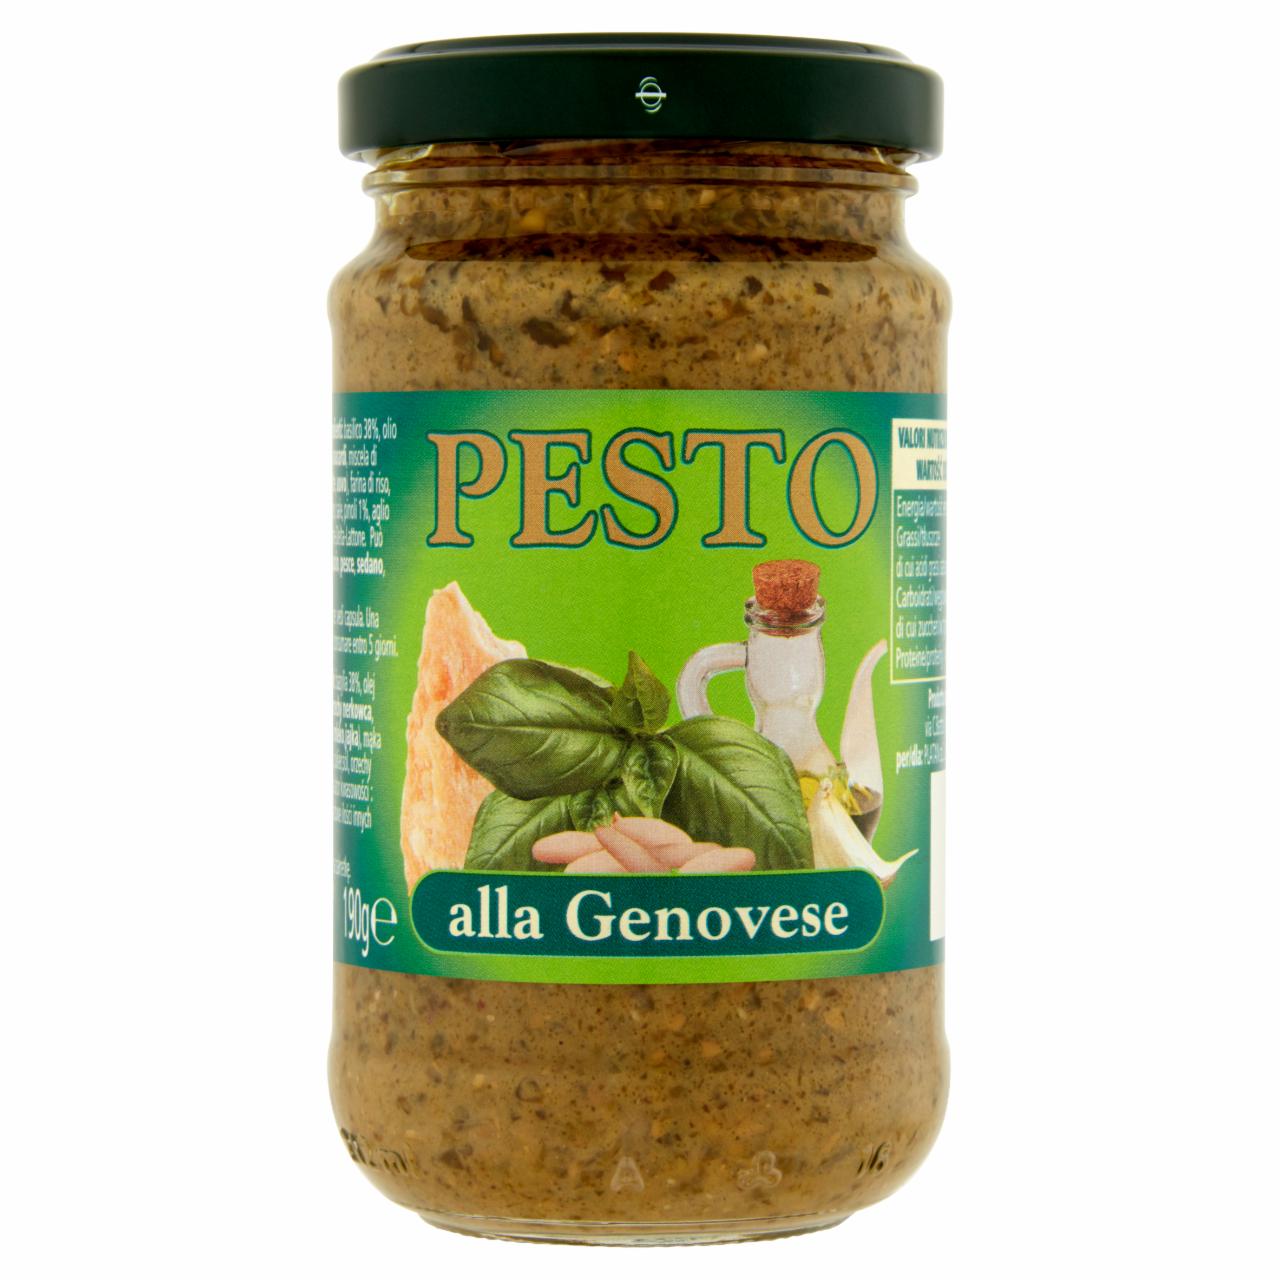 Zdjęcia - Pesto alla Genovese z bazylii 190 g